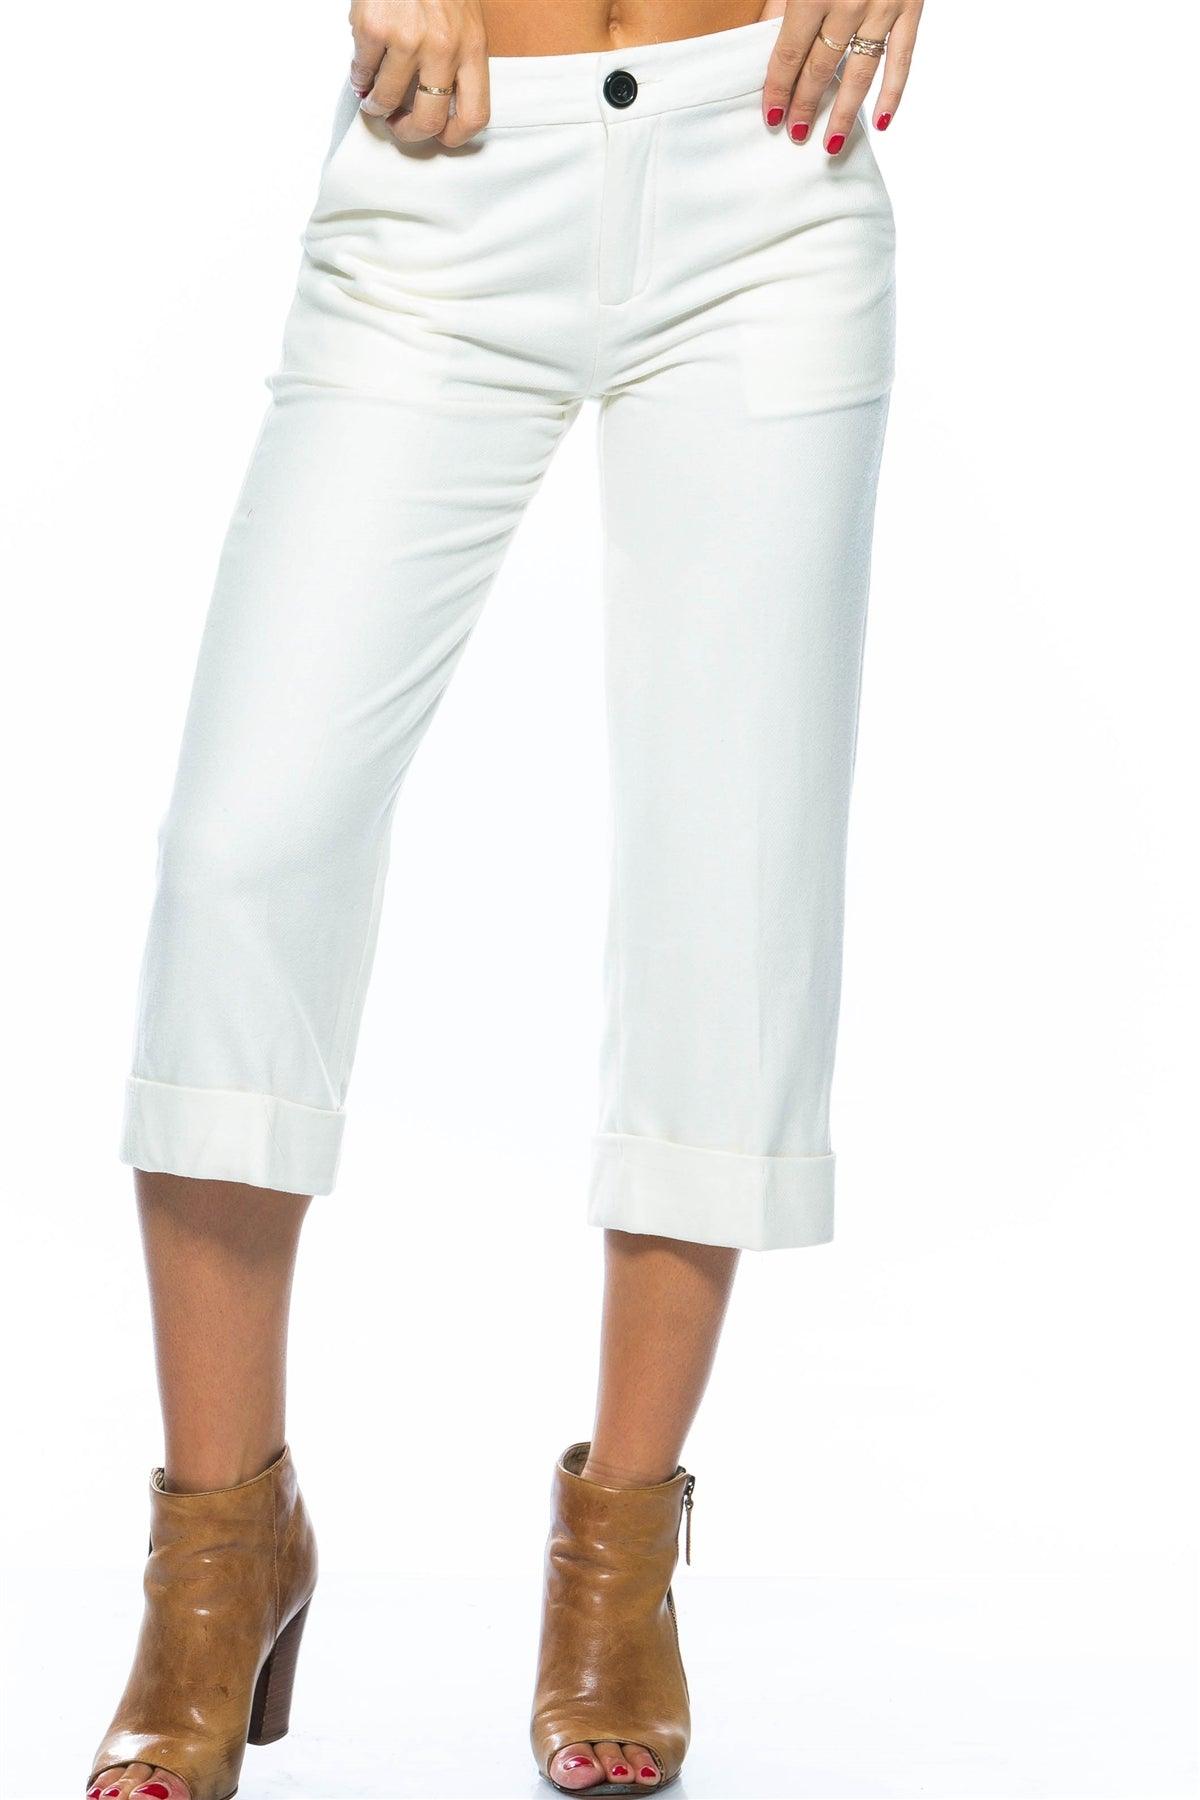 White Wide Leg Mid-Rise Capri Pants / 3-2-1